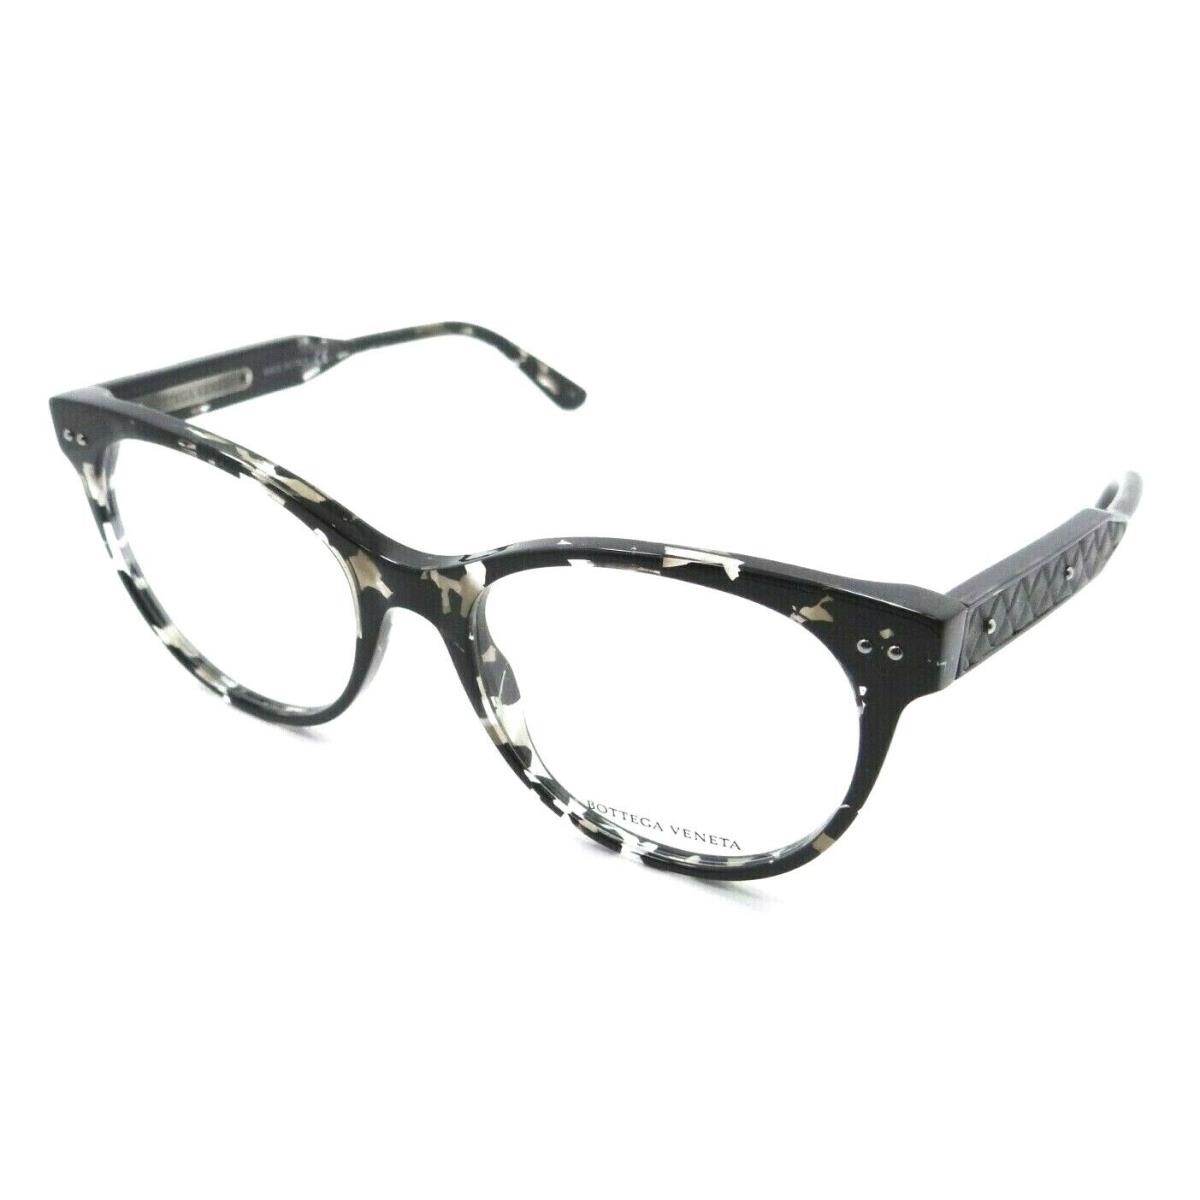 Bottega Veneta Eyeglasses Frames BV0017O 006 52-18-145 Havana / Grey Italy